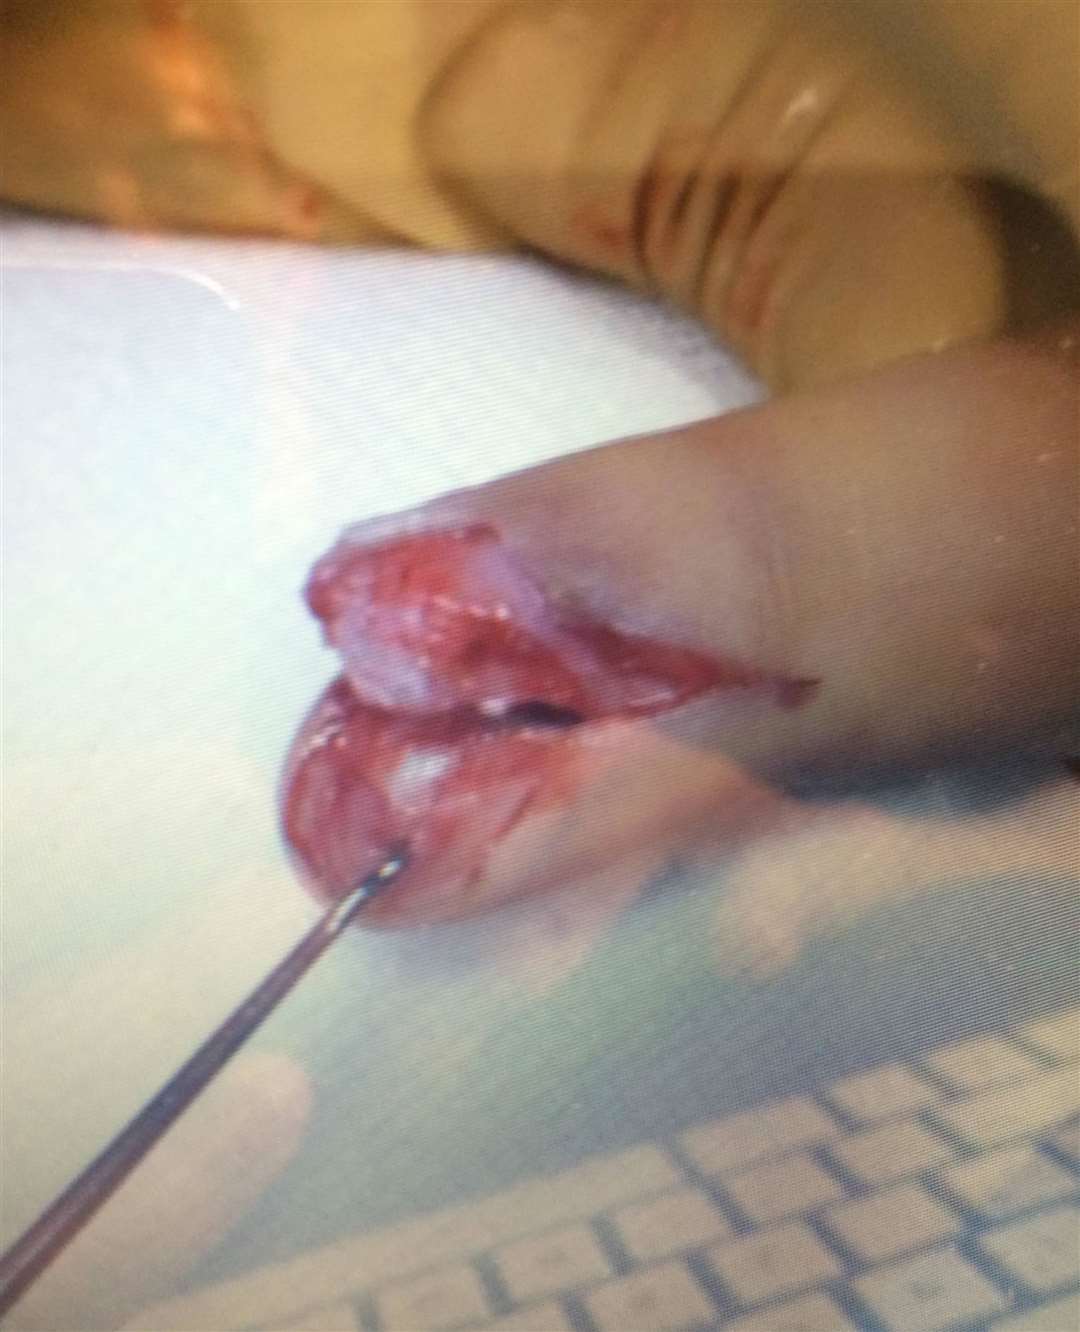 The injured finger